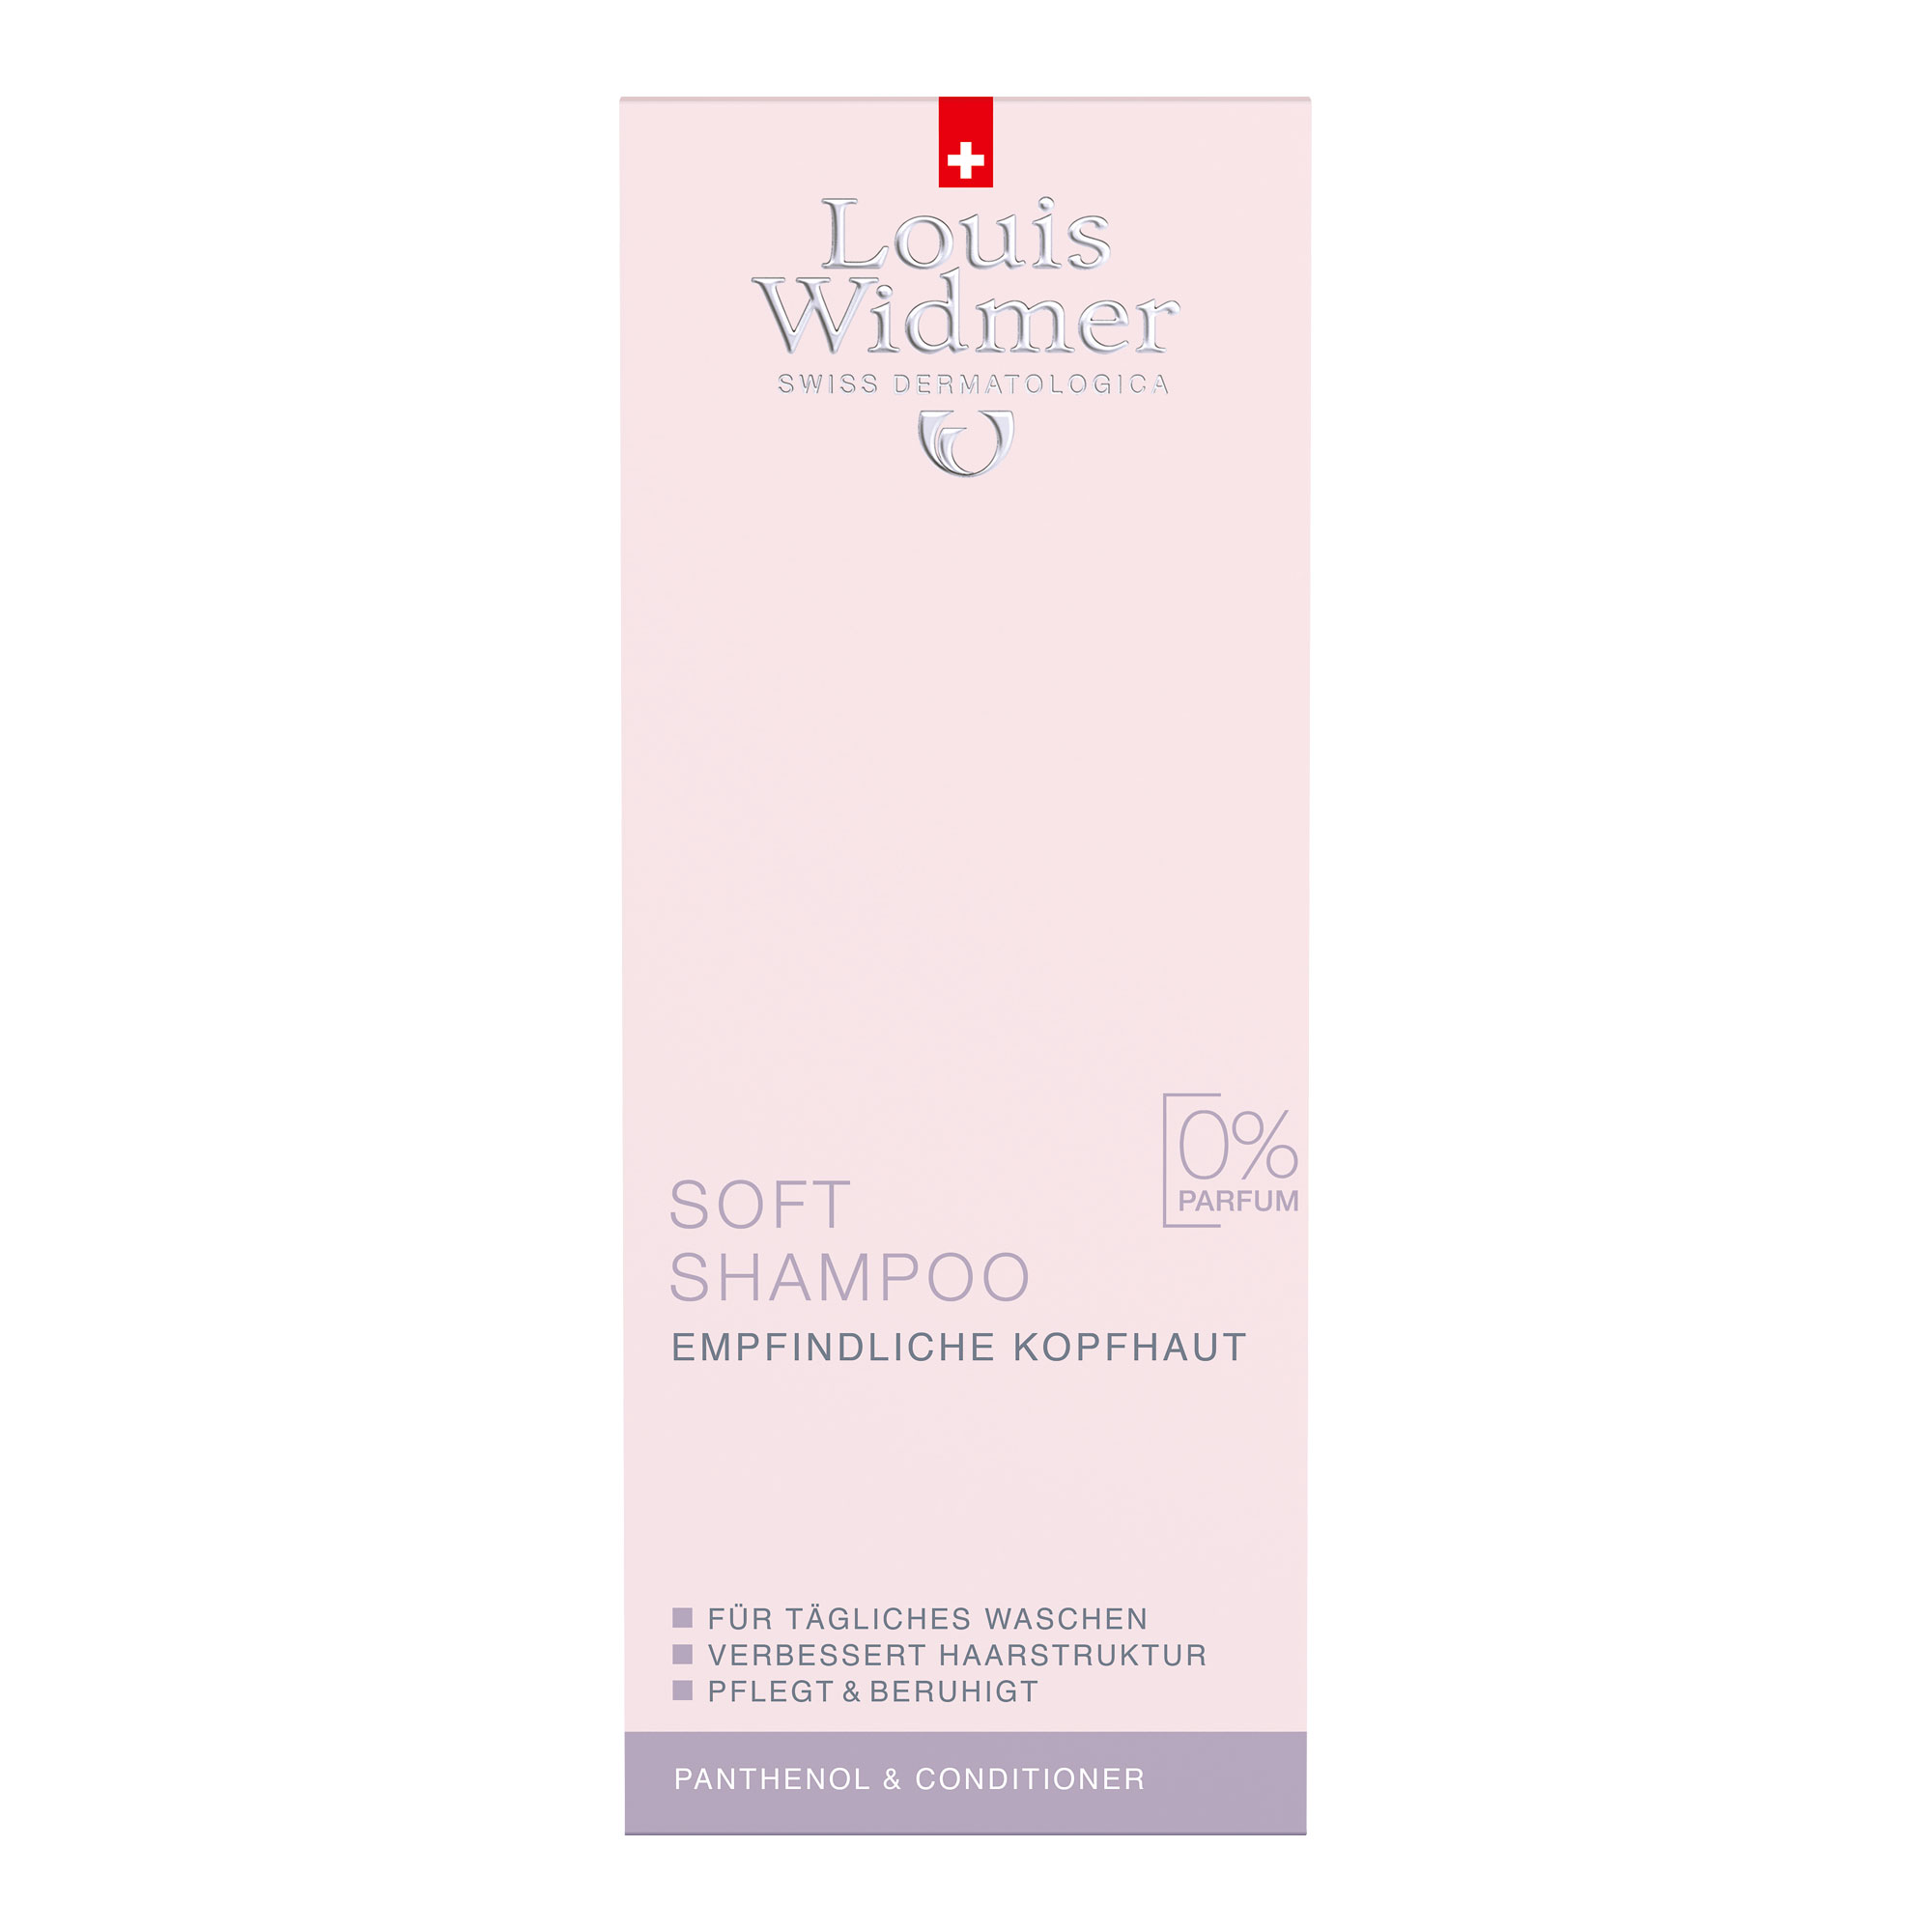 Widmer Soft Shampoo + Panthenol unparfümiert